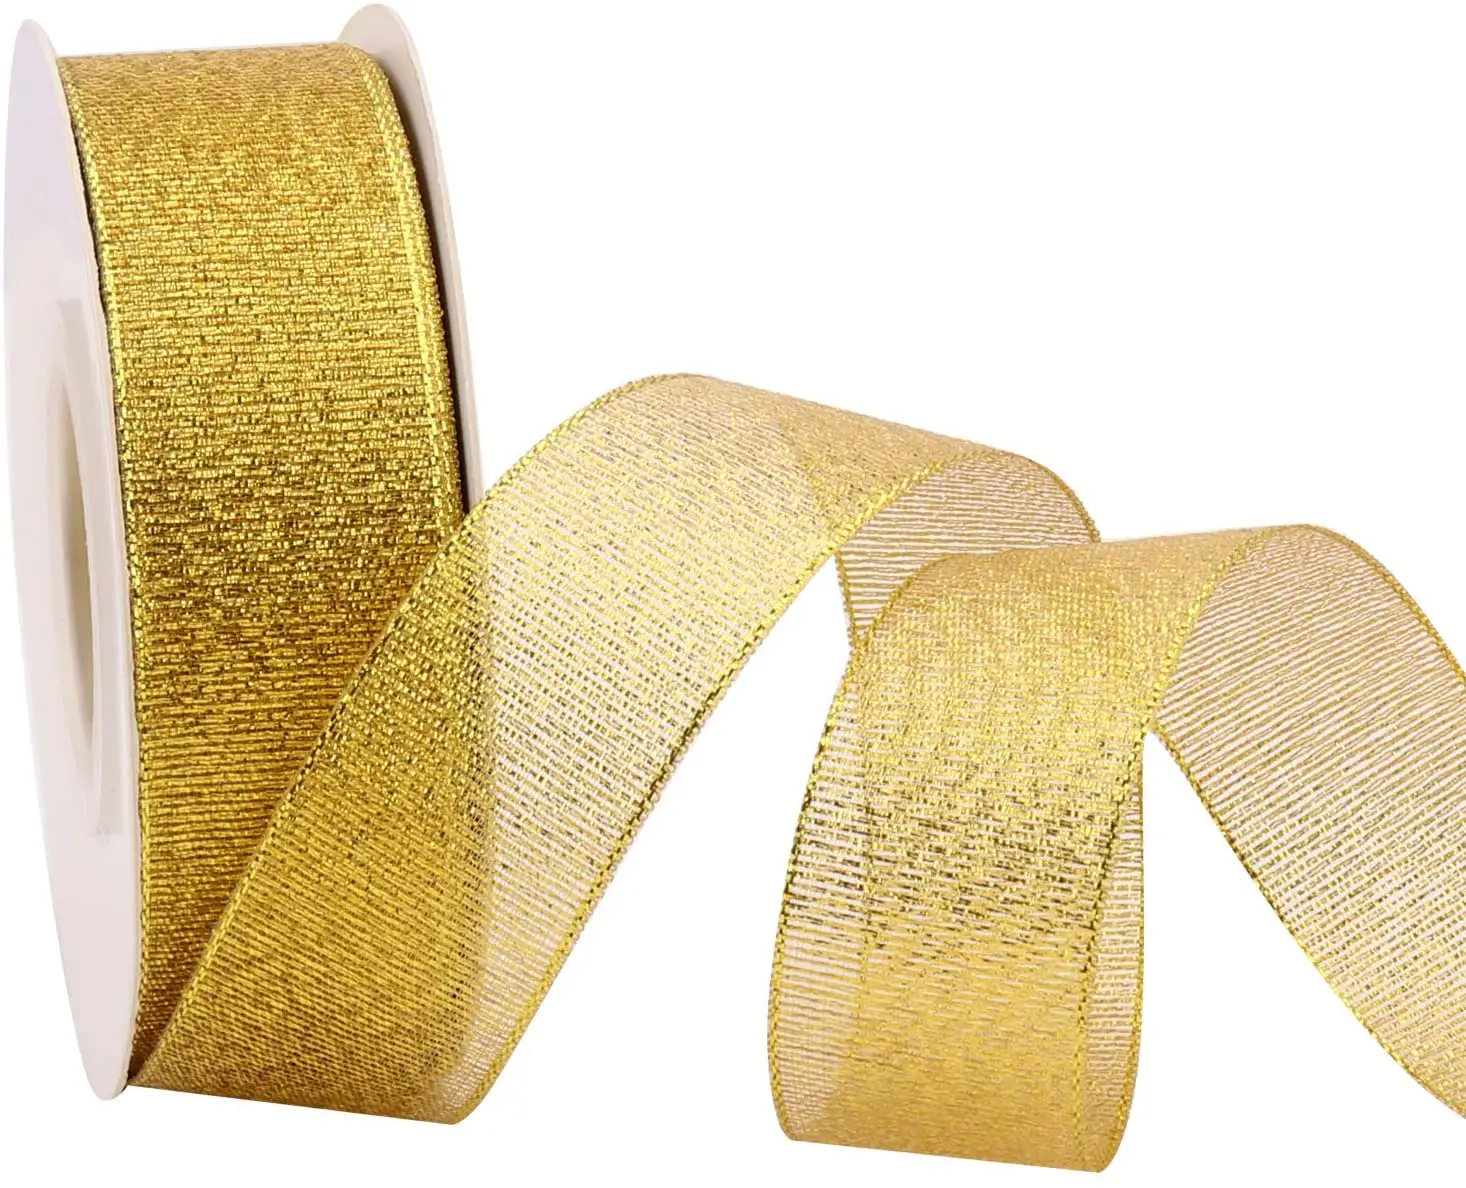 Nastro in oro con fiocco di neve a rete in organza cablata con nastro in oro glitterato da 1 pollice per confezioni regalo per matrimonio natale